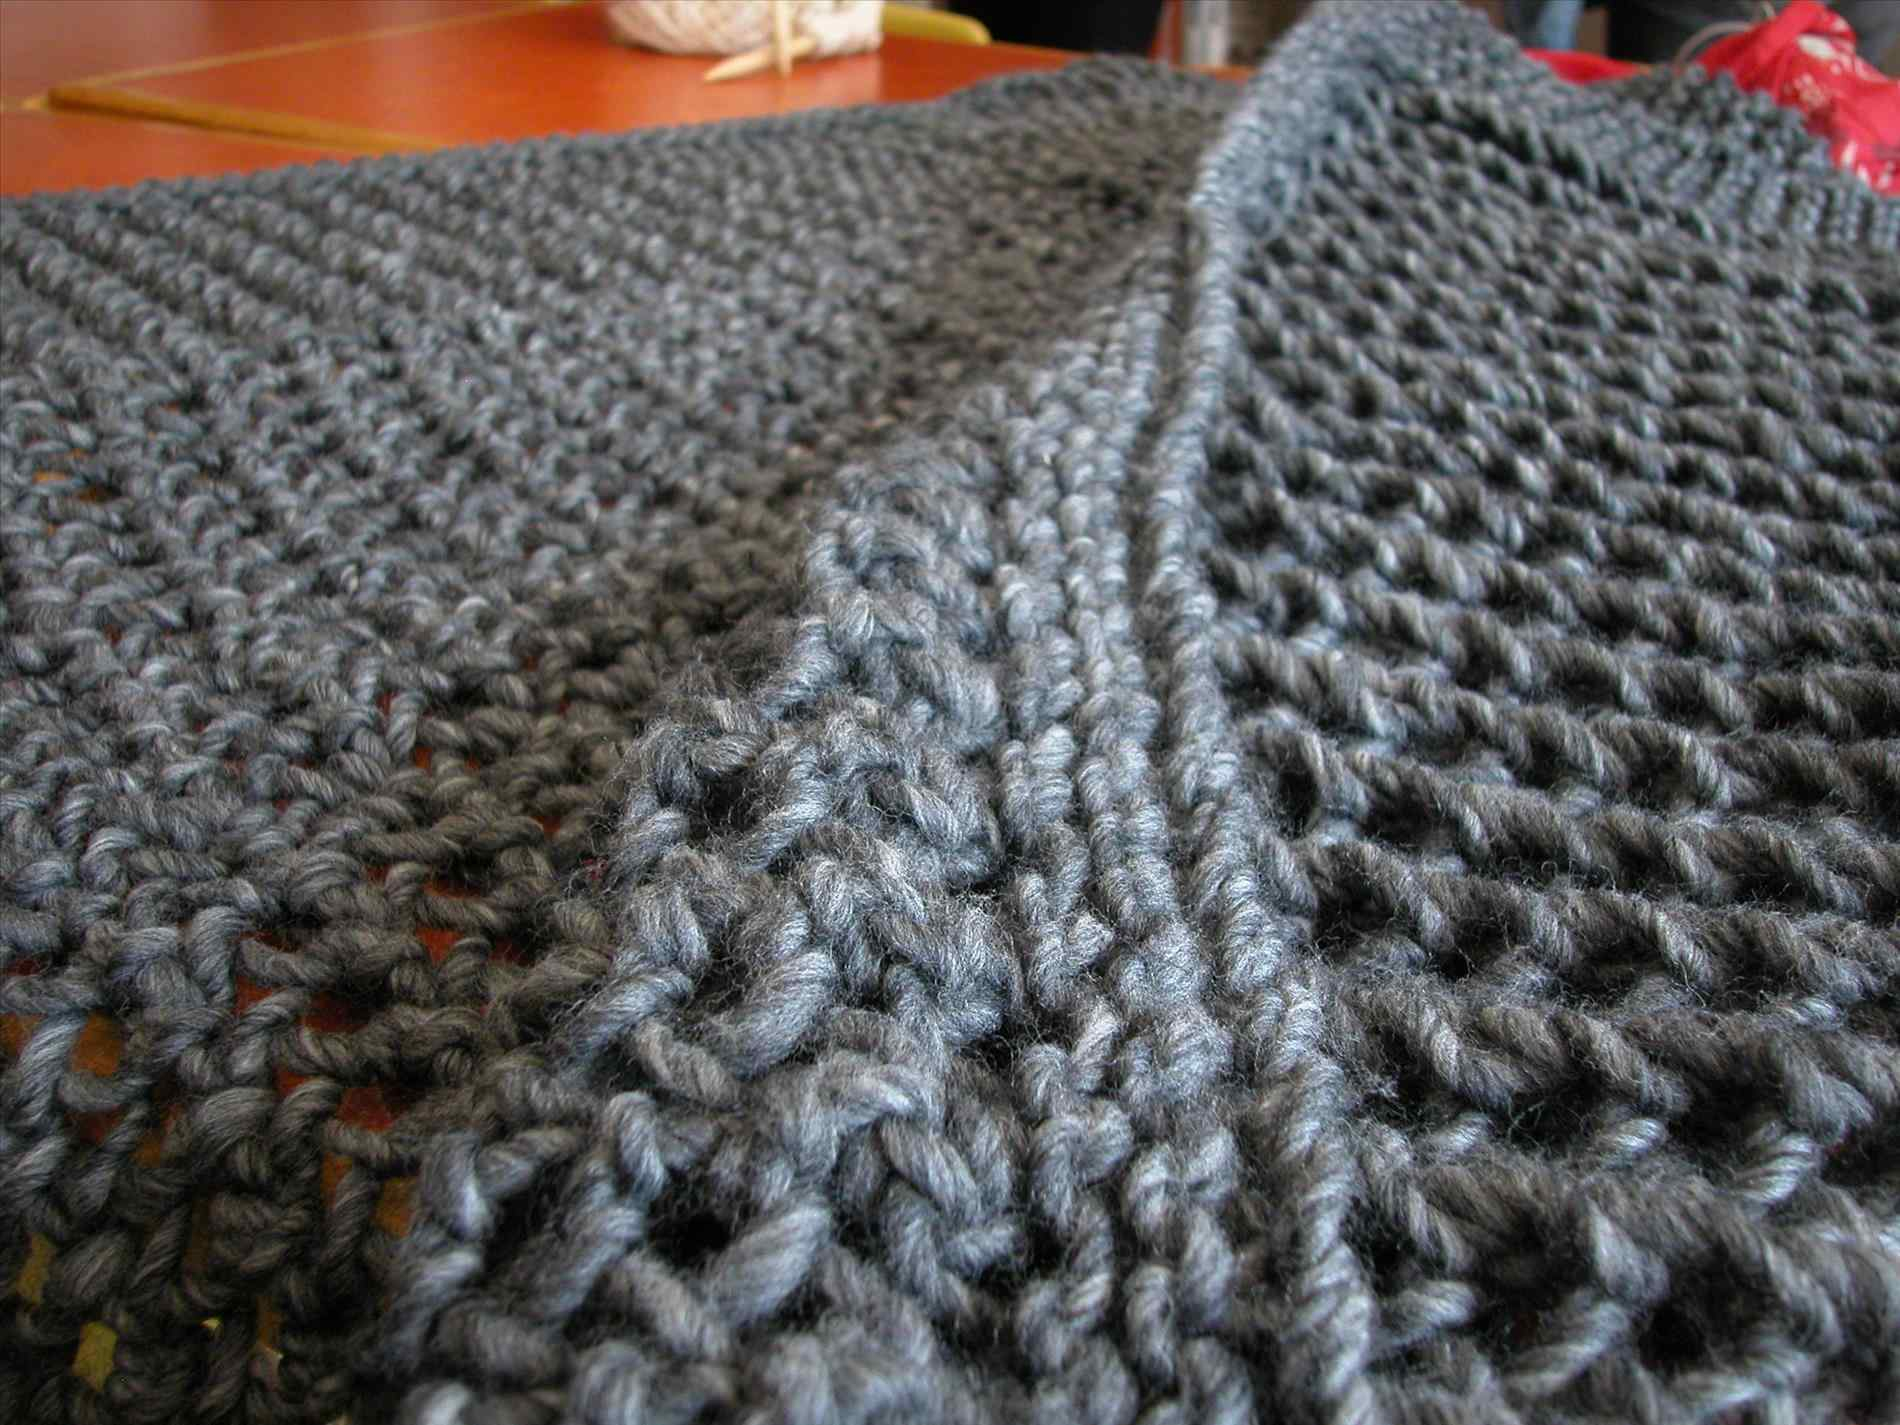 Bulky Yarn Crochet Patterns Free In Bloom Infinity Rhfiberfluxblogcom Fiber Super Bulky Yarn Crochet